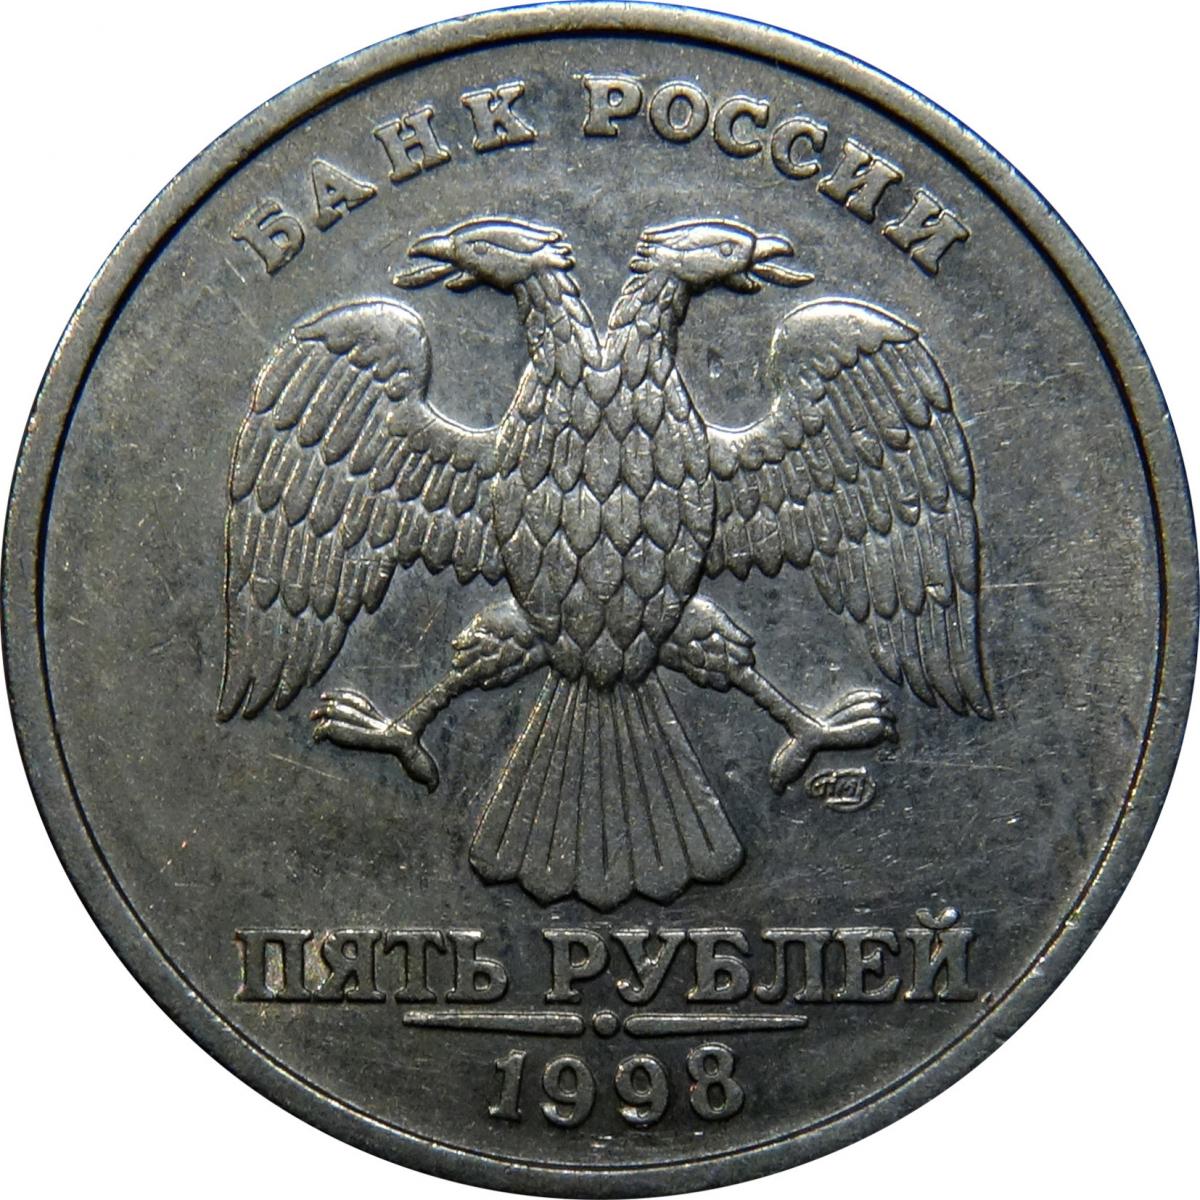 2 рубля стоимость. 2 Рубля 1998 года. 2 Рубля СПМД 98 год. Два рубля СПМД 1998. Редкие монеты 2 рубля 1998.